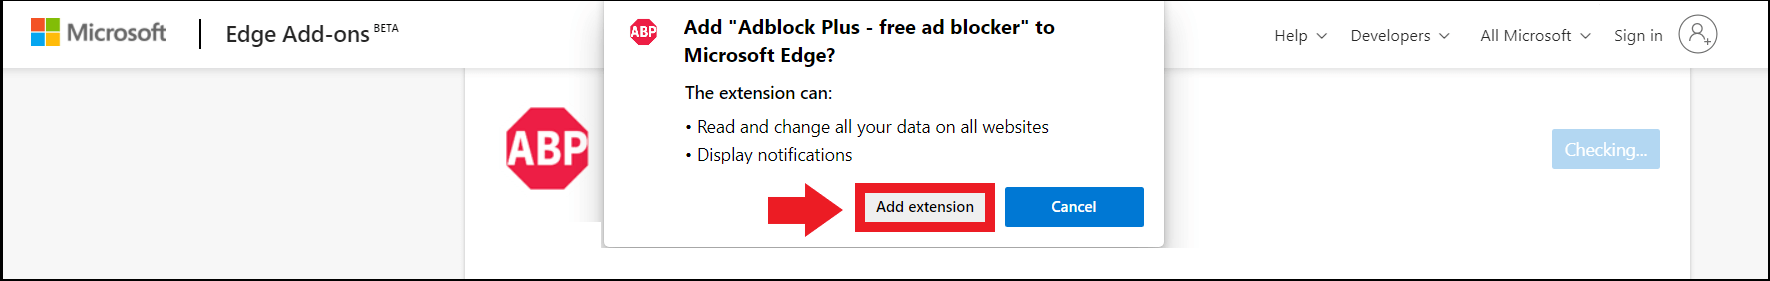 Installation d’Adblock Plus depuis la page des modules complémentaires Edge